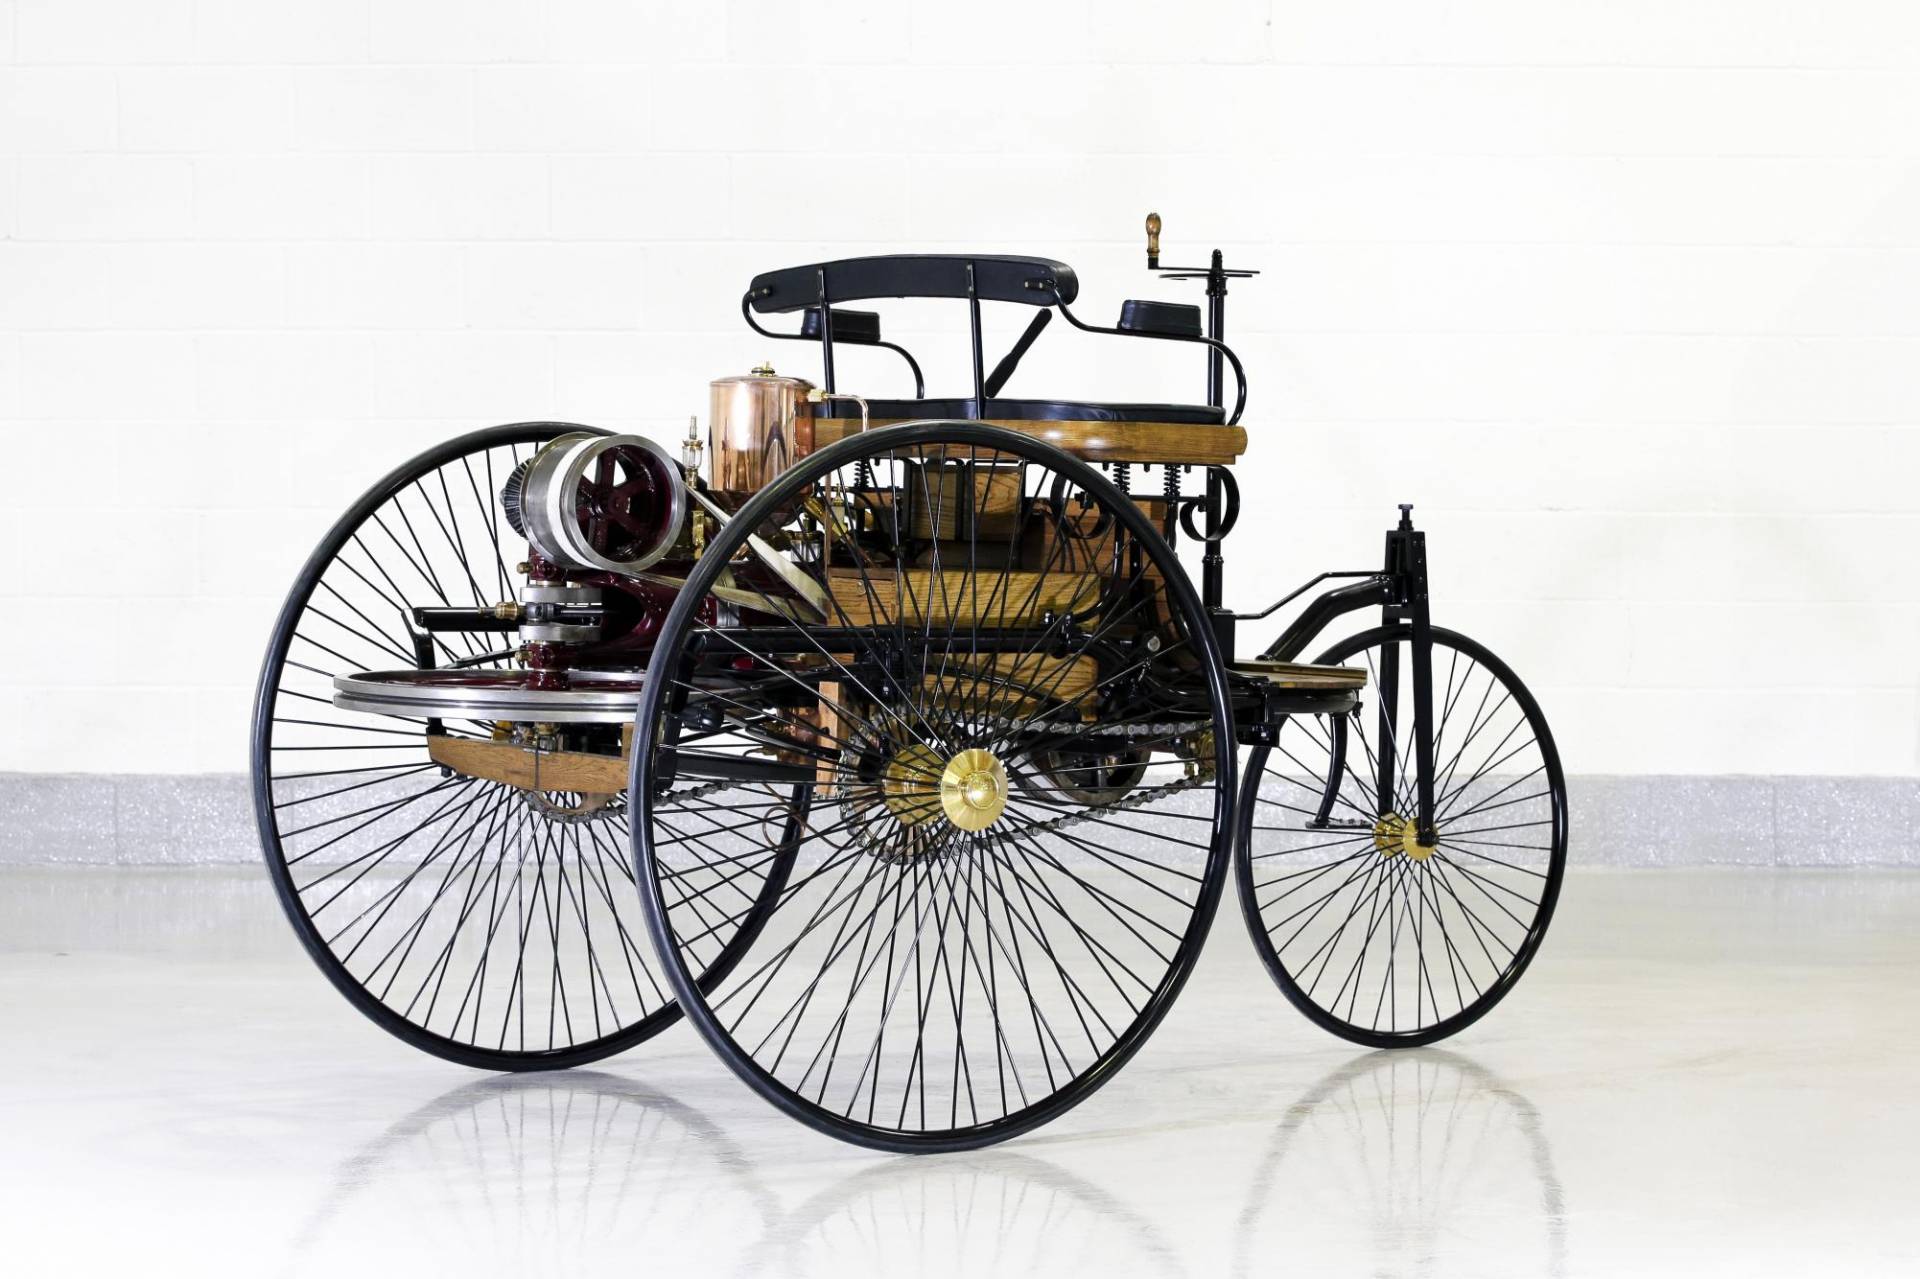 Benz Patent-Motorcar Number 1 Replica